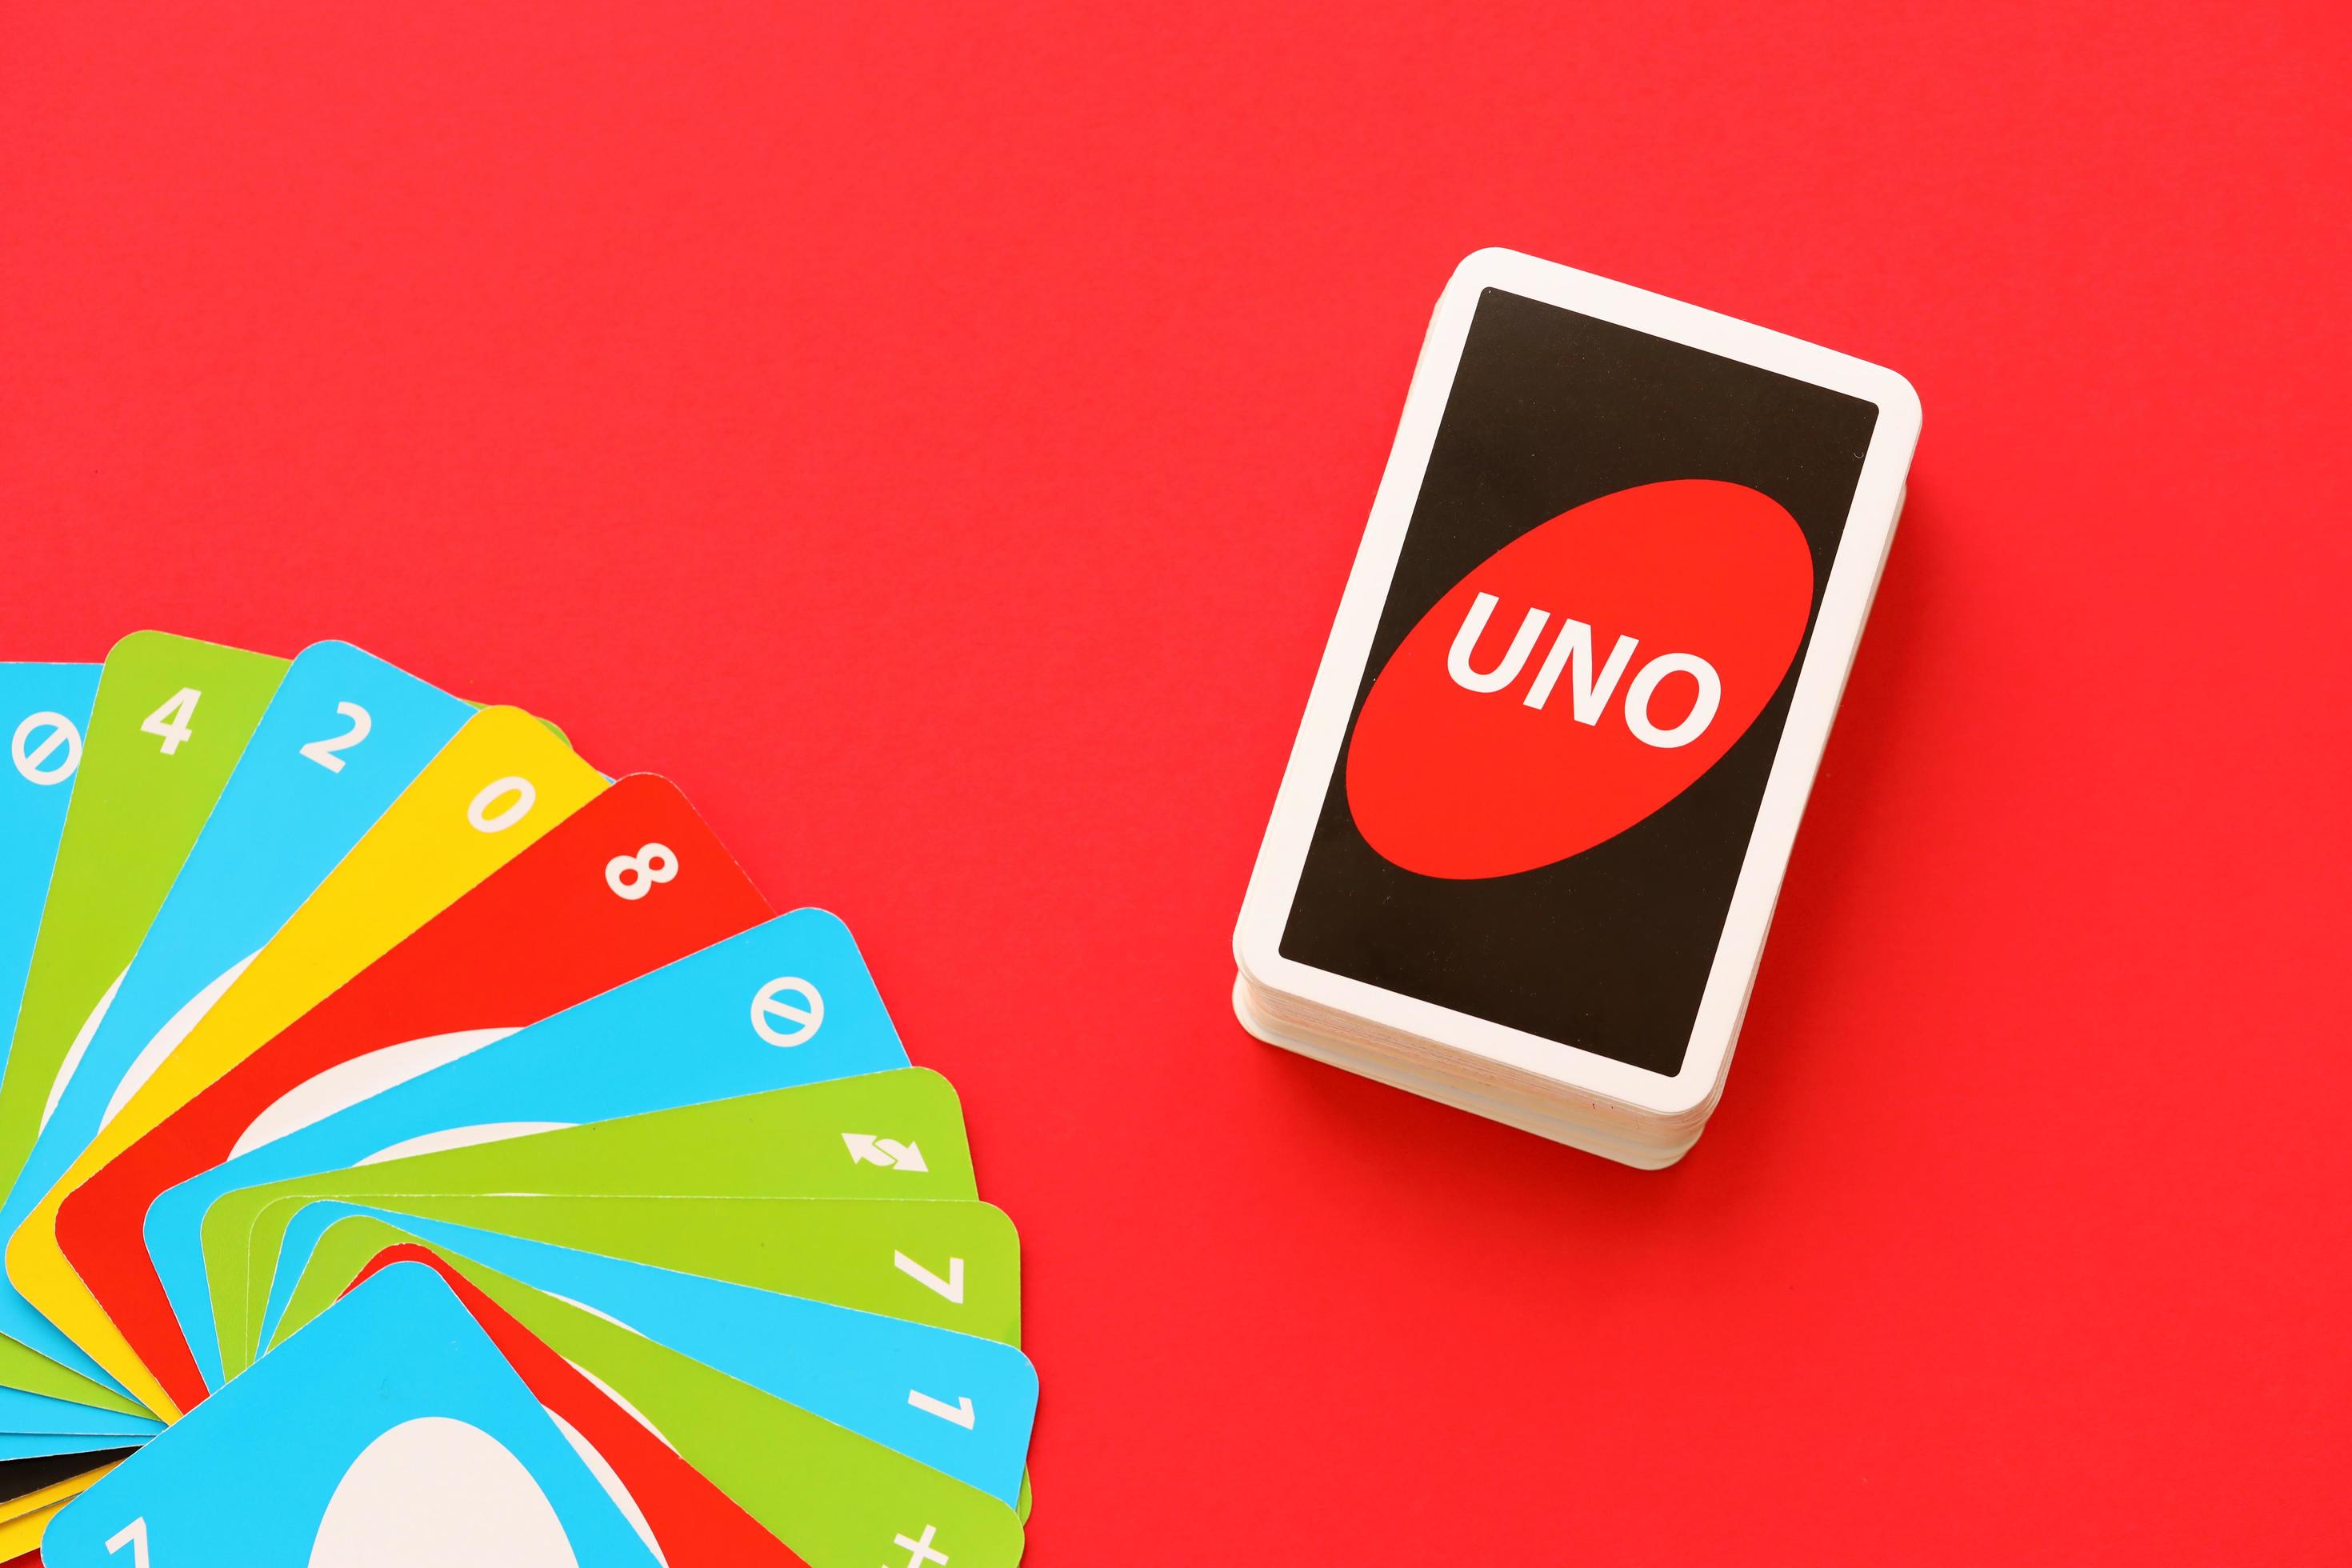 Bộ bài Uno là một tuyệt tác với những lá bài đầy màu sắc. Sản phẩm này không chỉ khiến bạn cảm thấy hứng thú khi nhìn nó, mà còn mang lại cảm giác hạnh phúc khi chơi Uno cùng những người thân yêu.